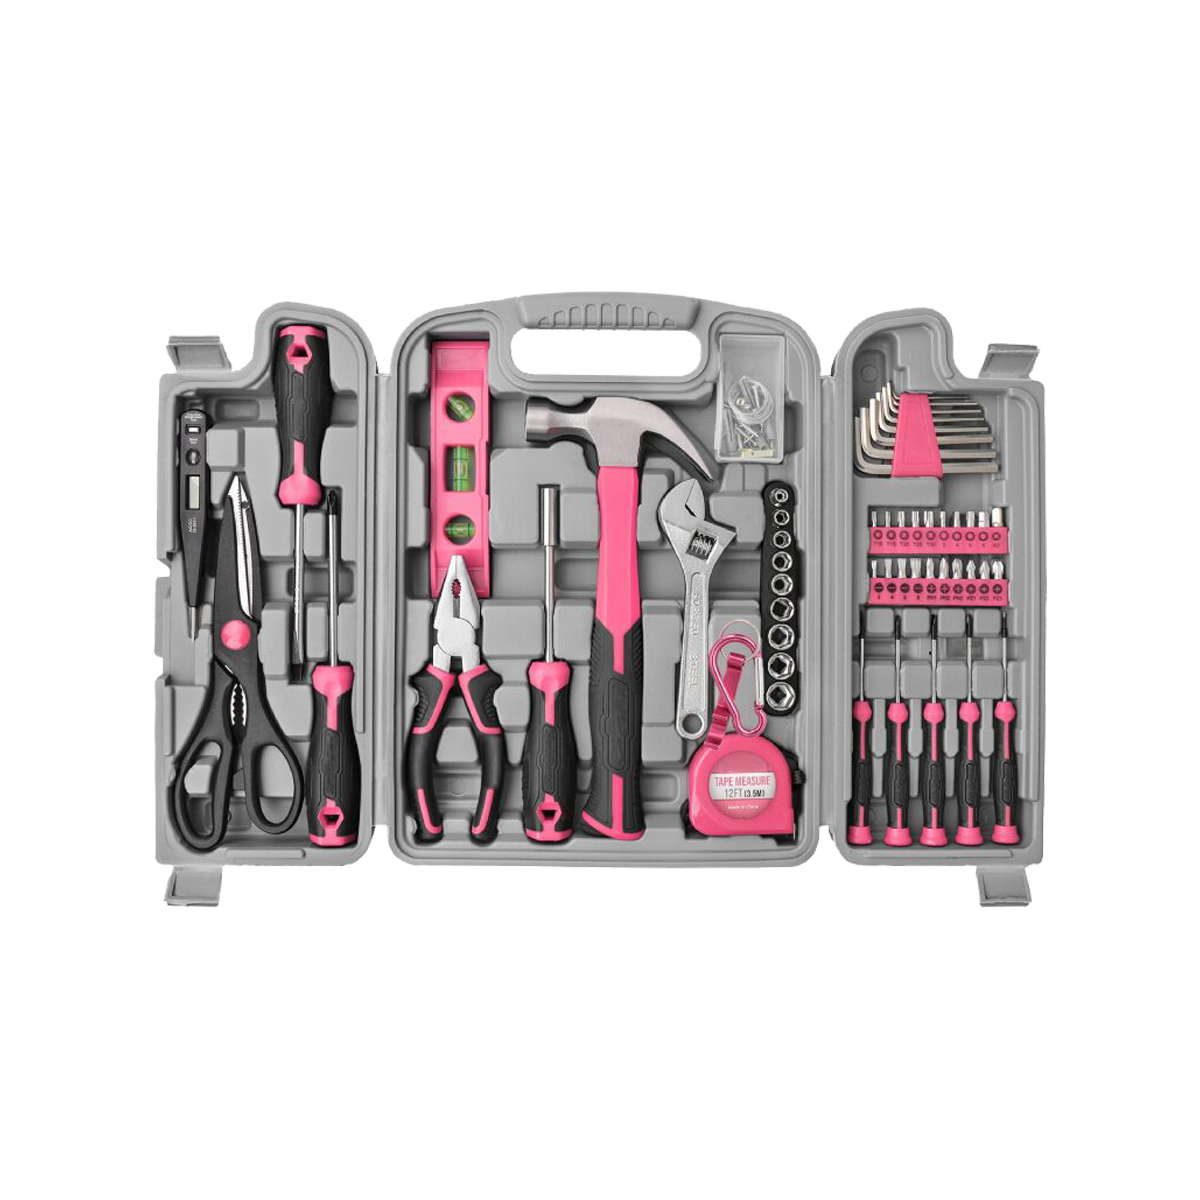 56 Uds. Kit de herramientas para el hogar rosa caja de herramientas de mano básicas reparaciones juego de herramientas completo para mujeres